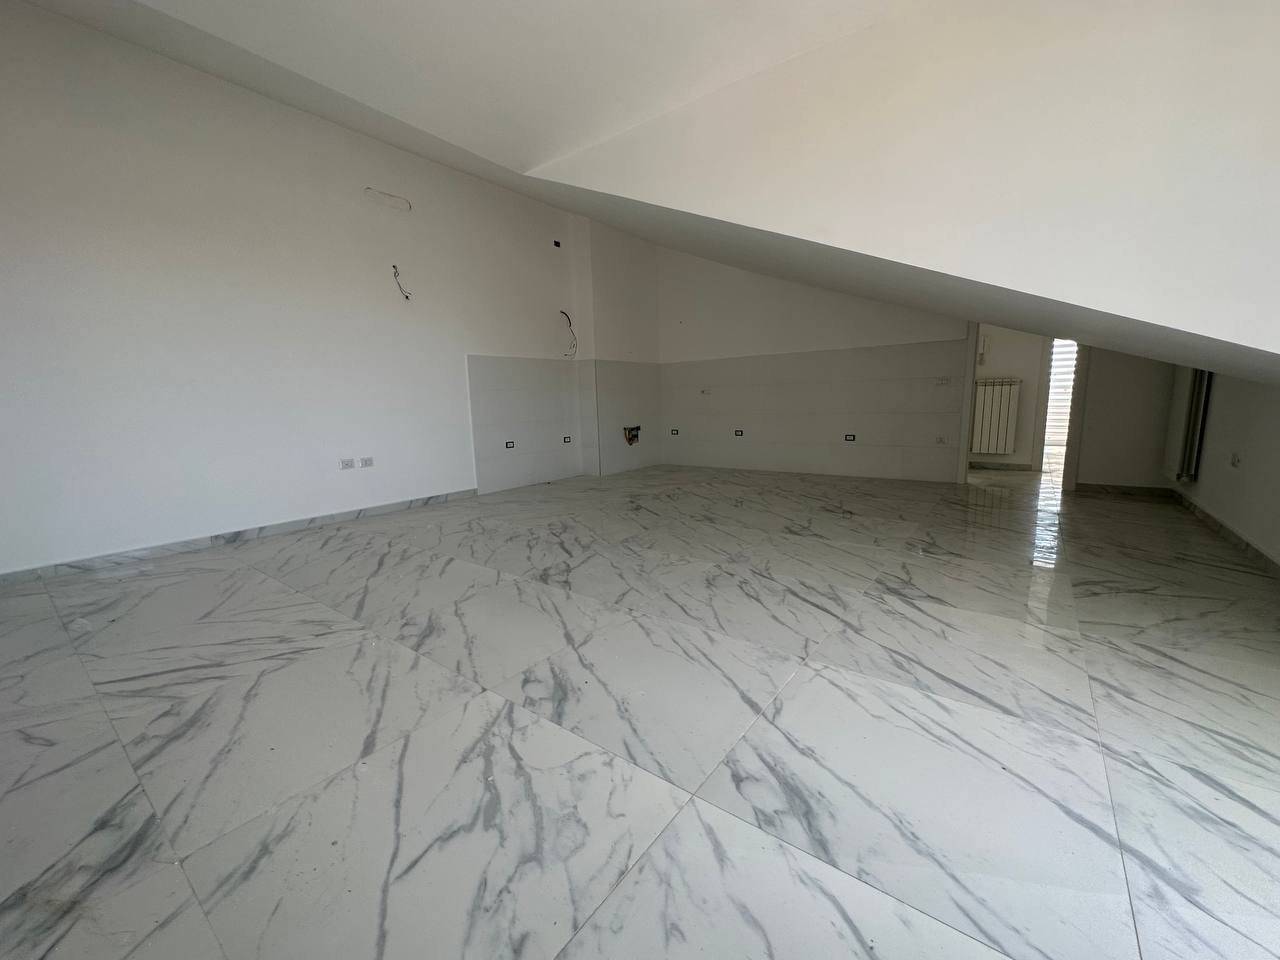 La TECNOimm propone in vendita nel comune di Gricignano di Aversa, un appartamento di nuova costruzione in classe A, posto all'ultimo piano di un 